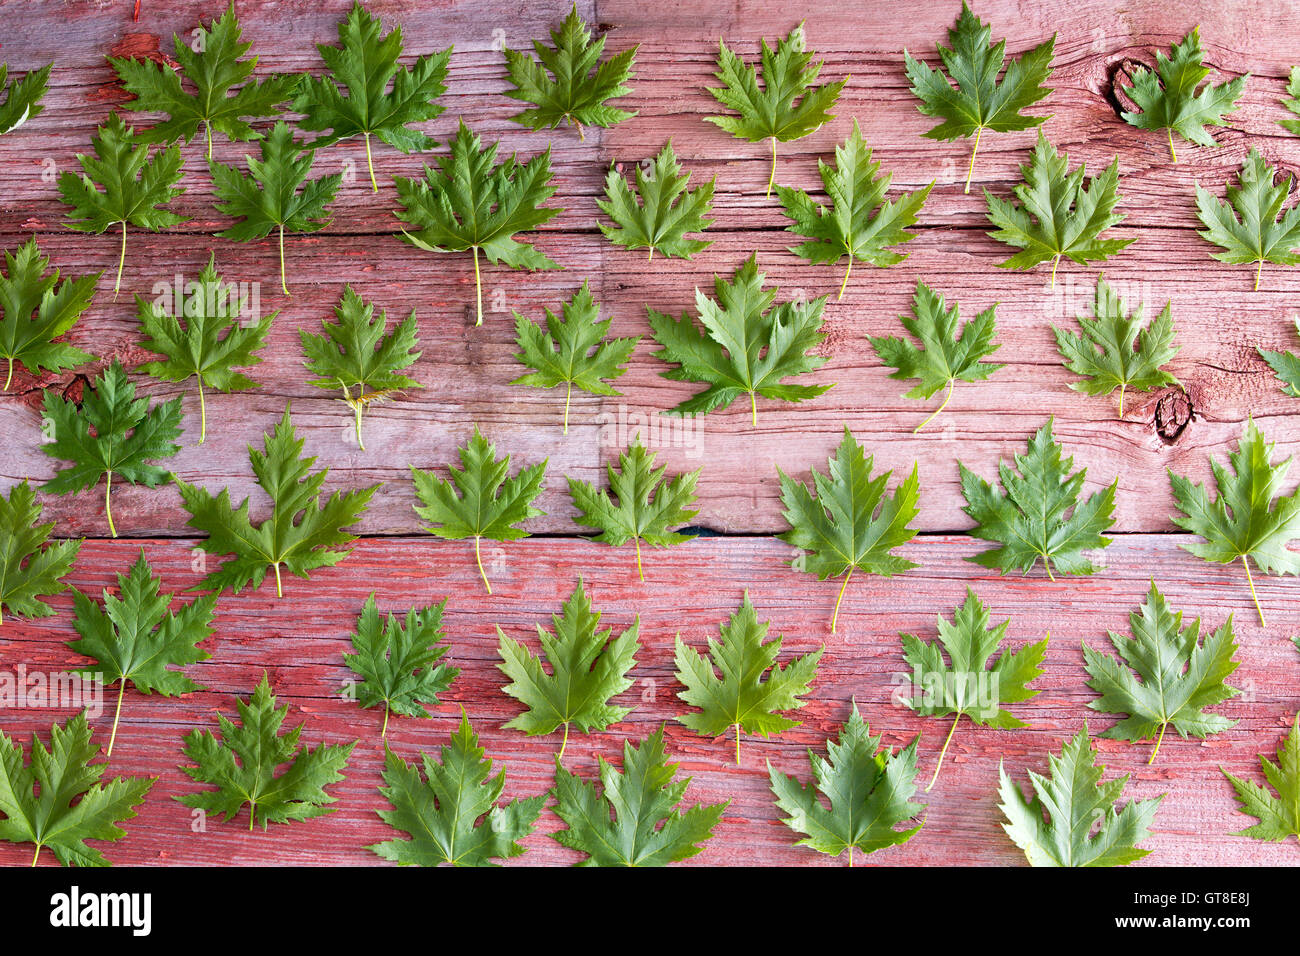 Feuille d'Érable vert frais motif disposés en rangées sur des planches de bois rustique du printemps ou conceptuel Canada Banque D'Images